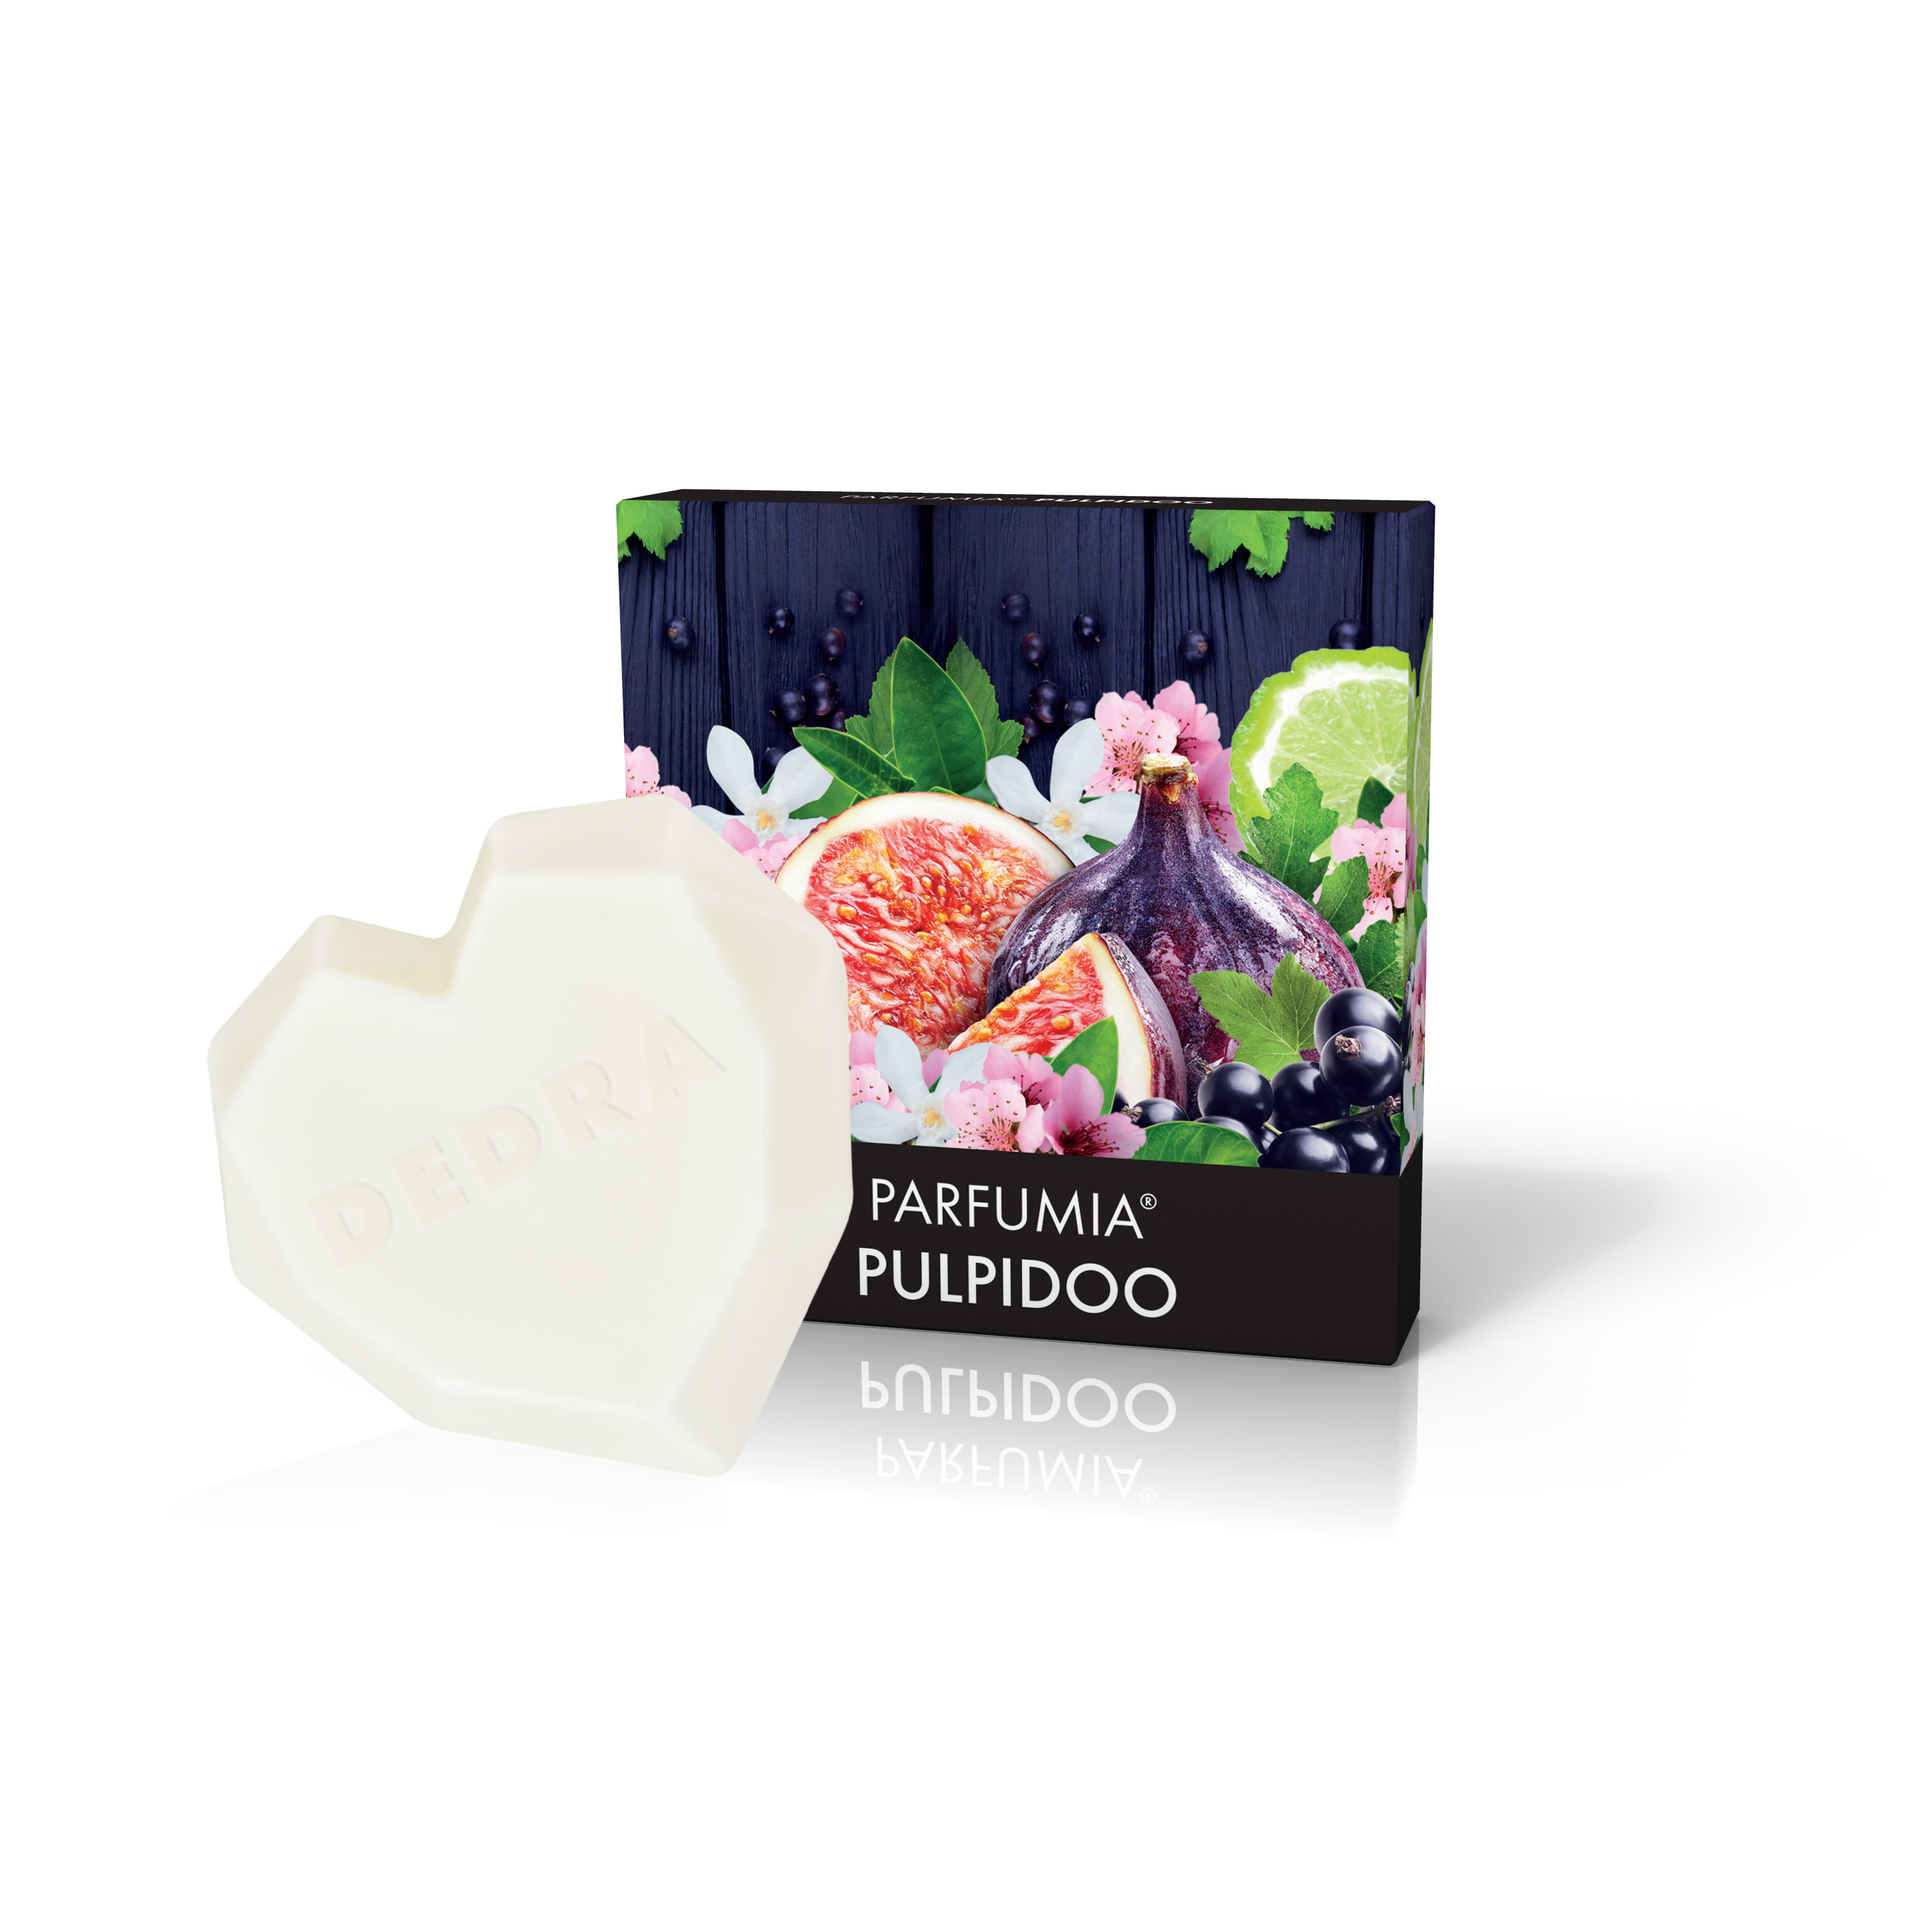 Vonný sójový EKO vosk Parfumia ovocný koktejl Pulpidoo